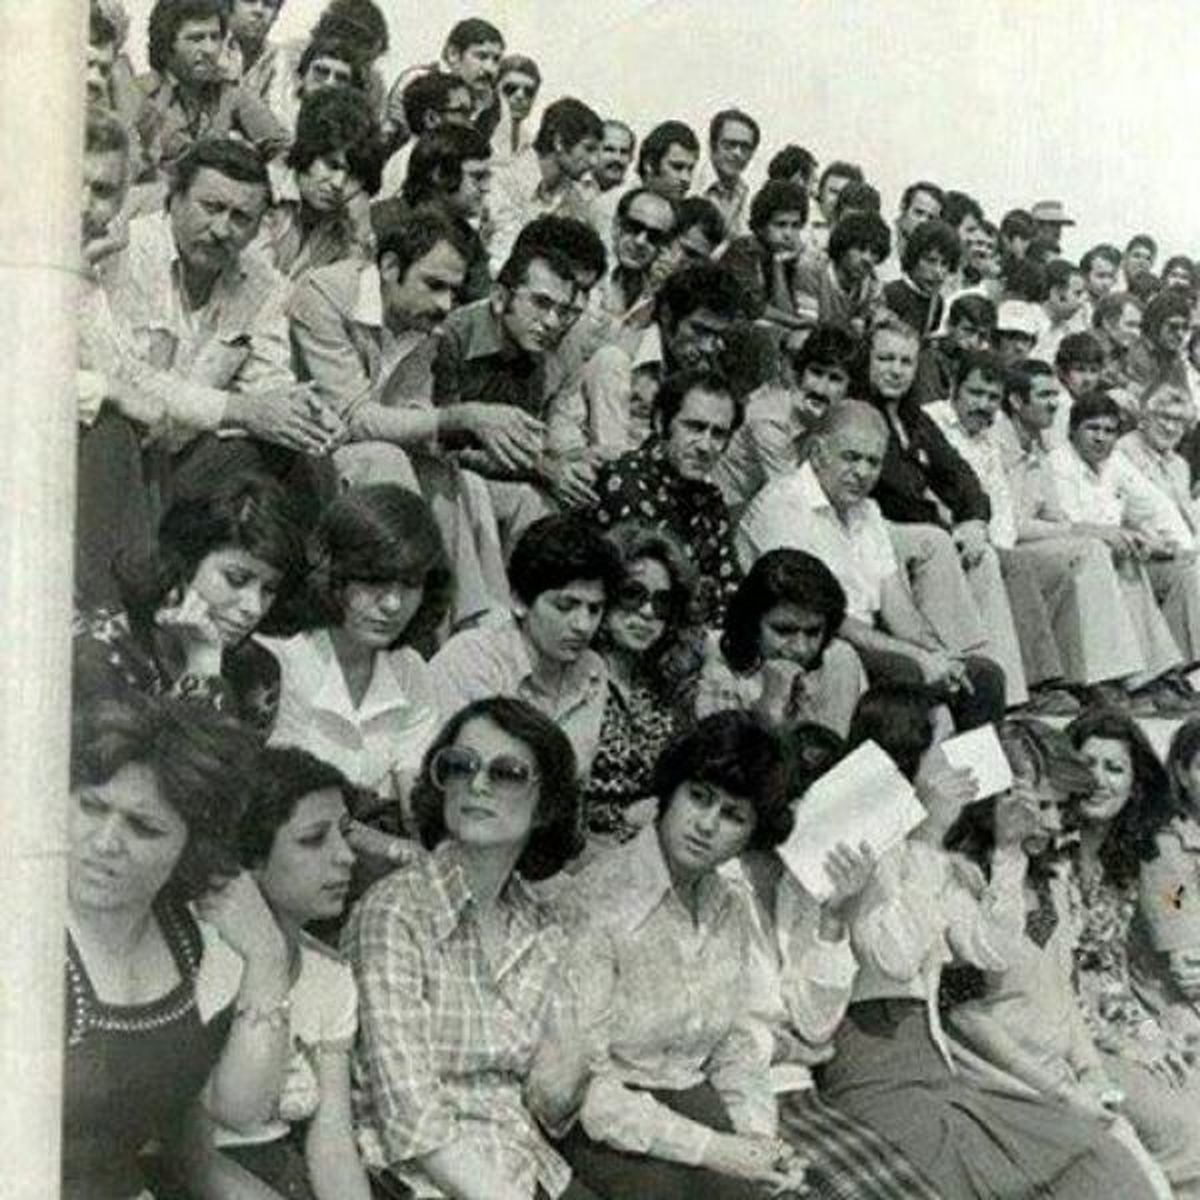 عکسی کمتر دیده شده حضور از زنان در امجدیه/ وقتی تماشای فوتبال محدودیت نداشت